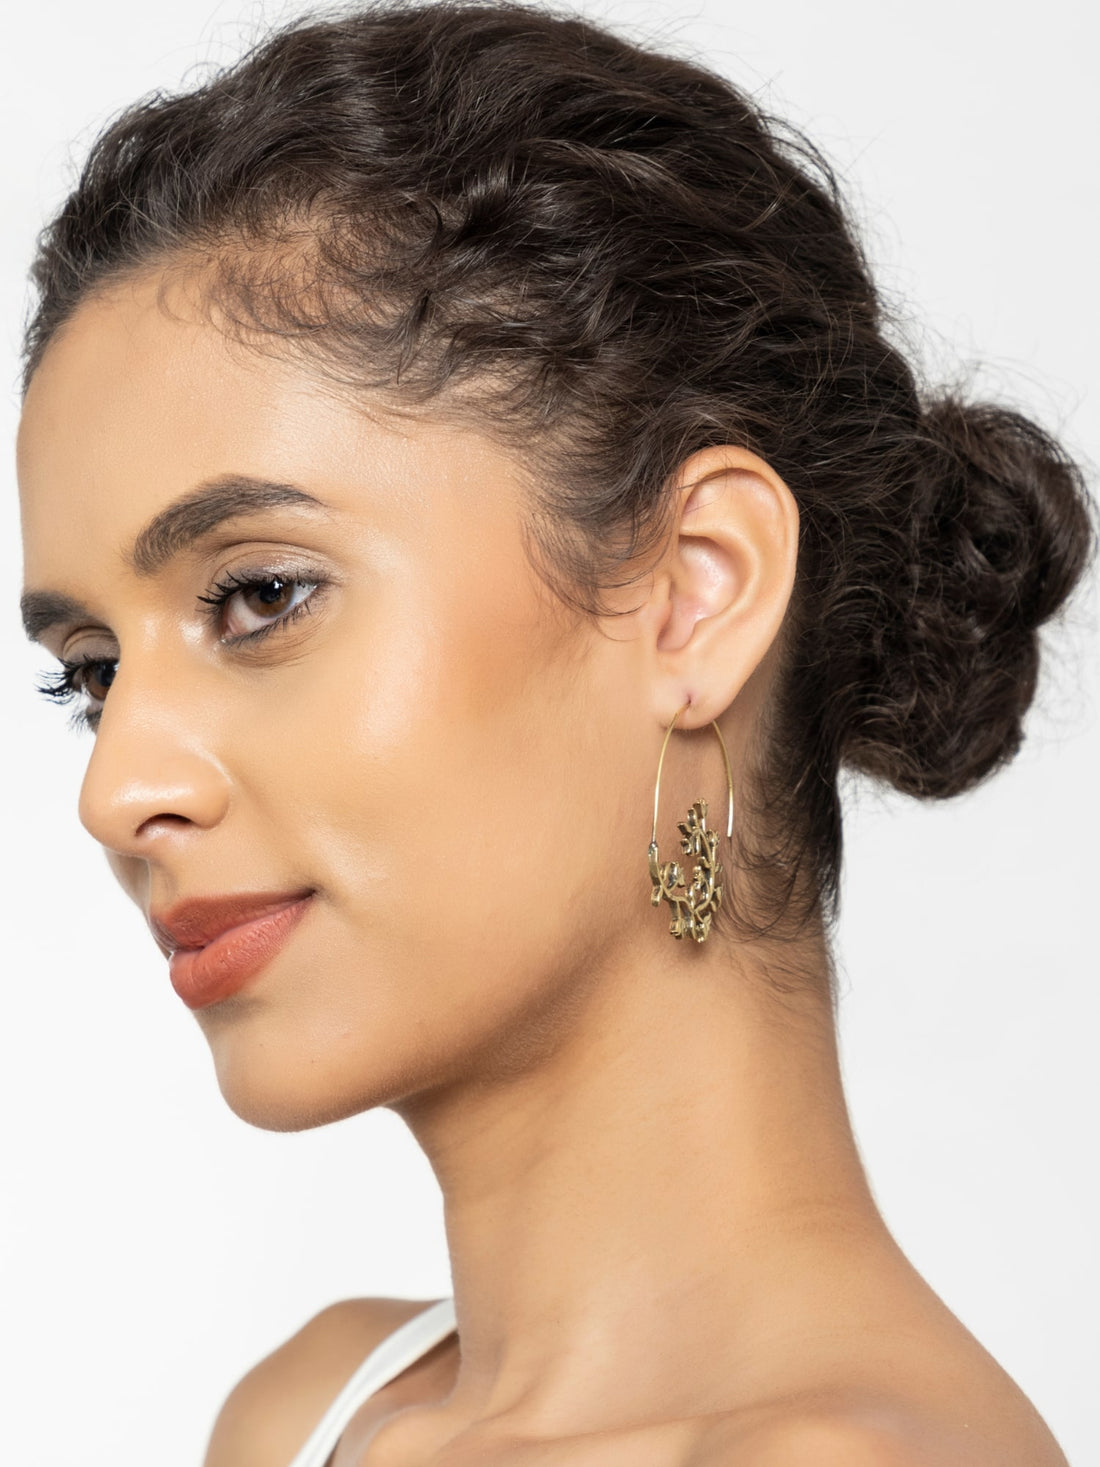 Work Wear Hoops Earrings - Western Gold-Plated Brass Earrings By Studio One Love